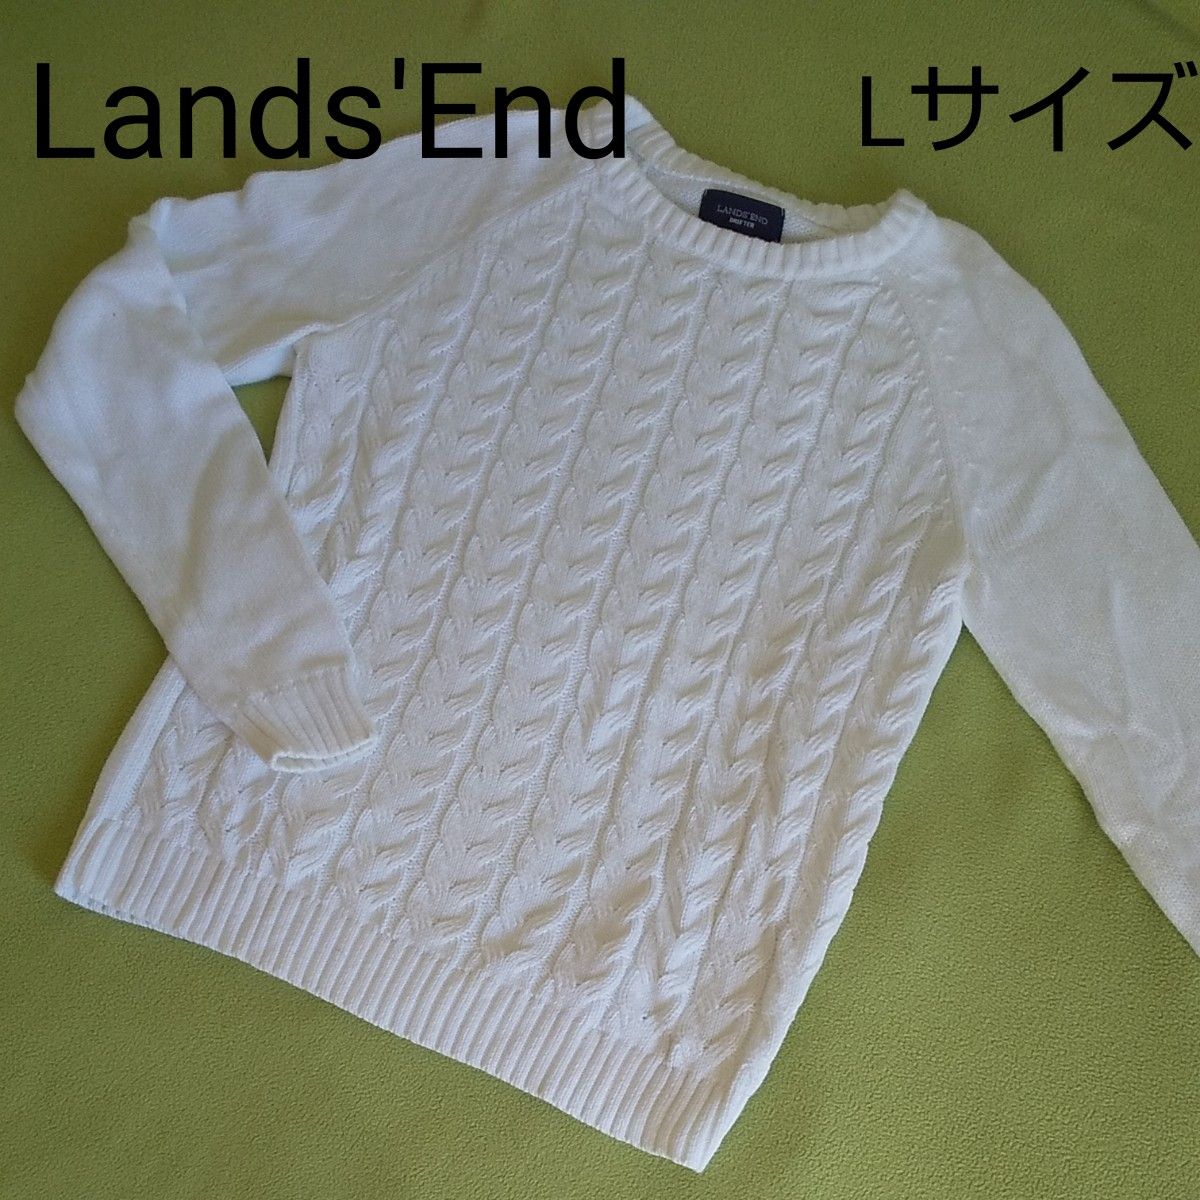 【試着のみ美品】LANDS'END ランズエンド ドリフターセーター 長袖 綿 コットン100% ホワイト L 手洗い可 春ニット